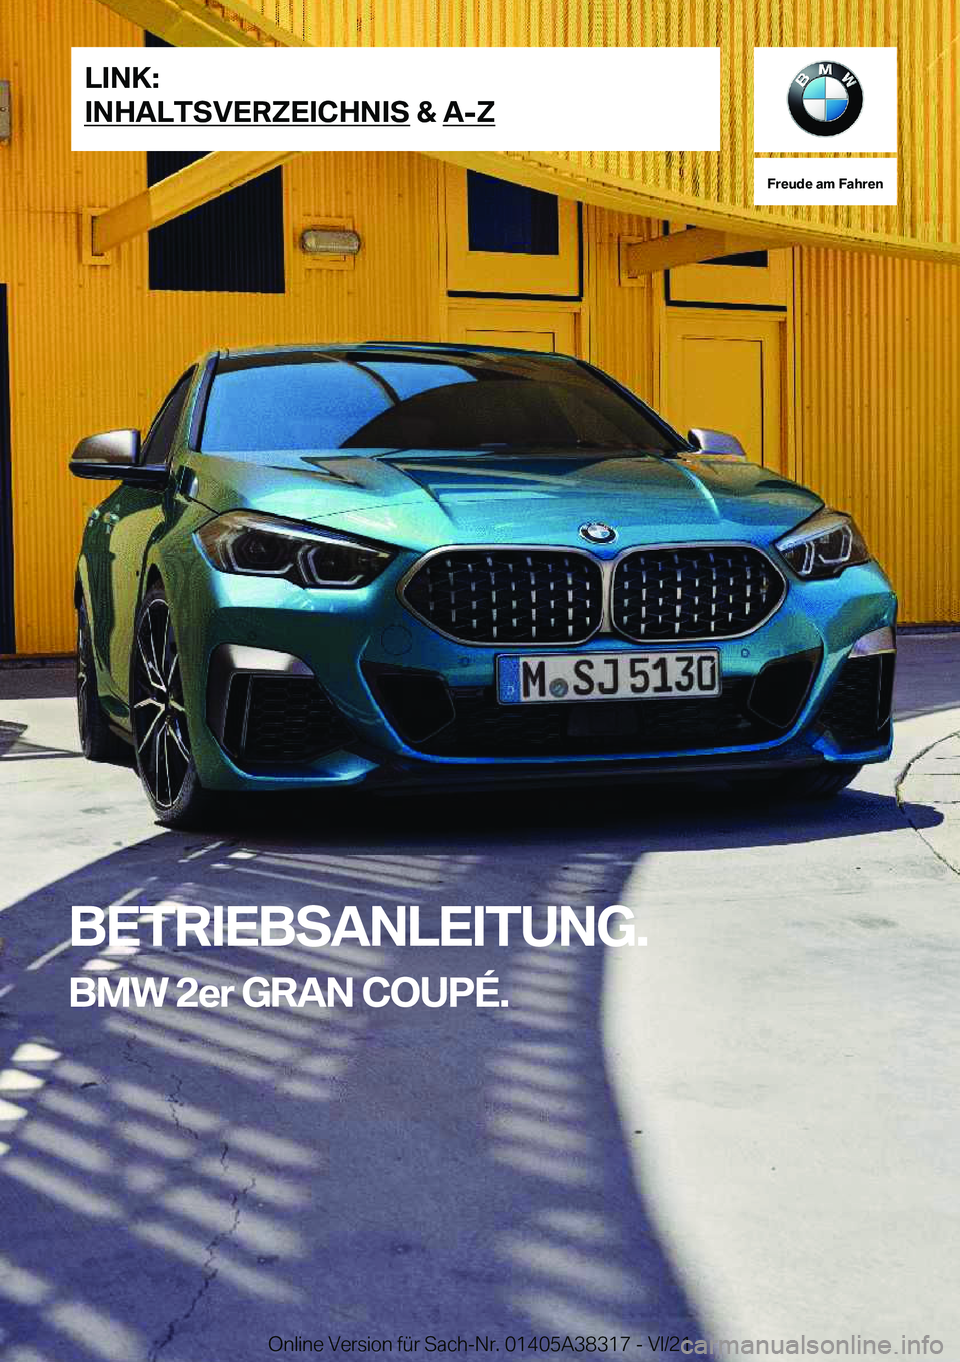 BMW 2 SERIES GRAN COUPE 2022  Betriebsanleitungen (in German) �F�r�e�u�d�e��a�m��F�a�h�r�e�n
�B�E�T�R�I�E�B�S�A�N�L�E�I�T�U�N�G�.�B�M�W��2�e�r��G�R�A�N��C�O�U�P�